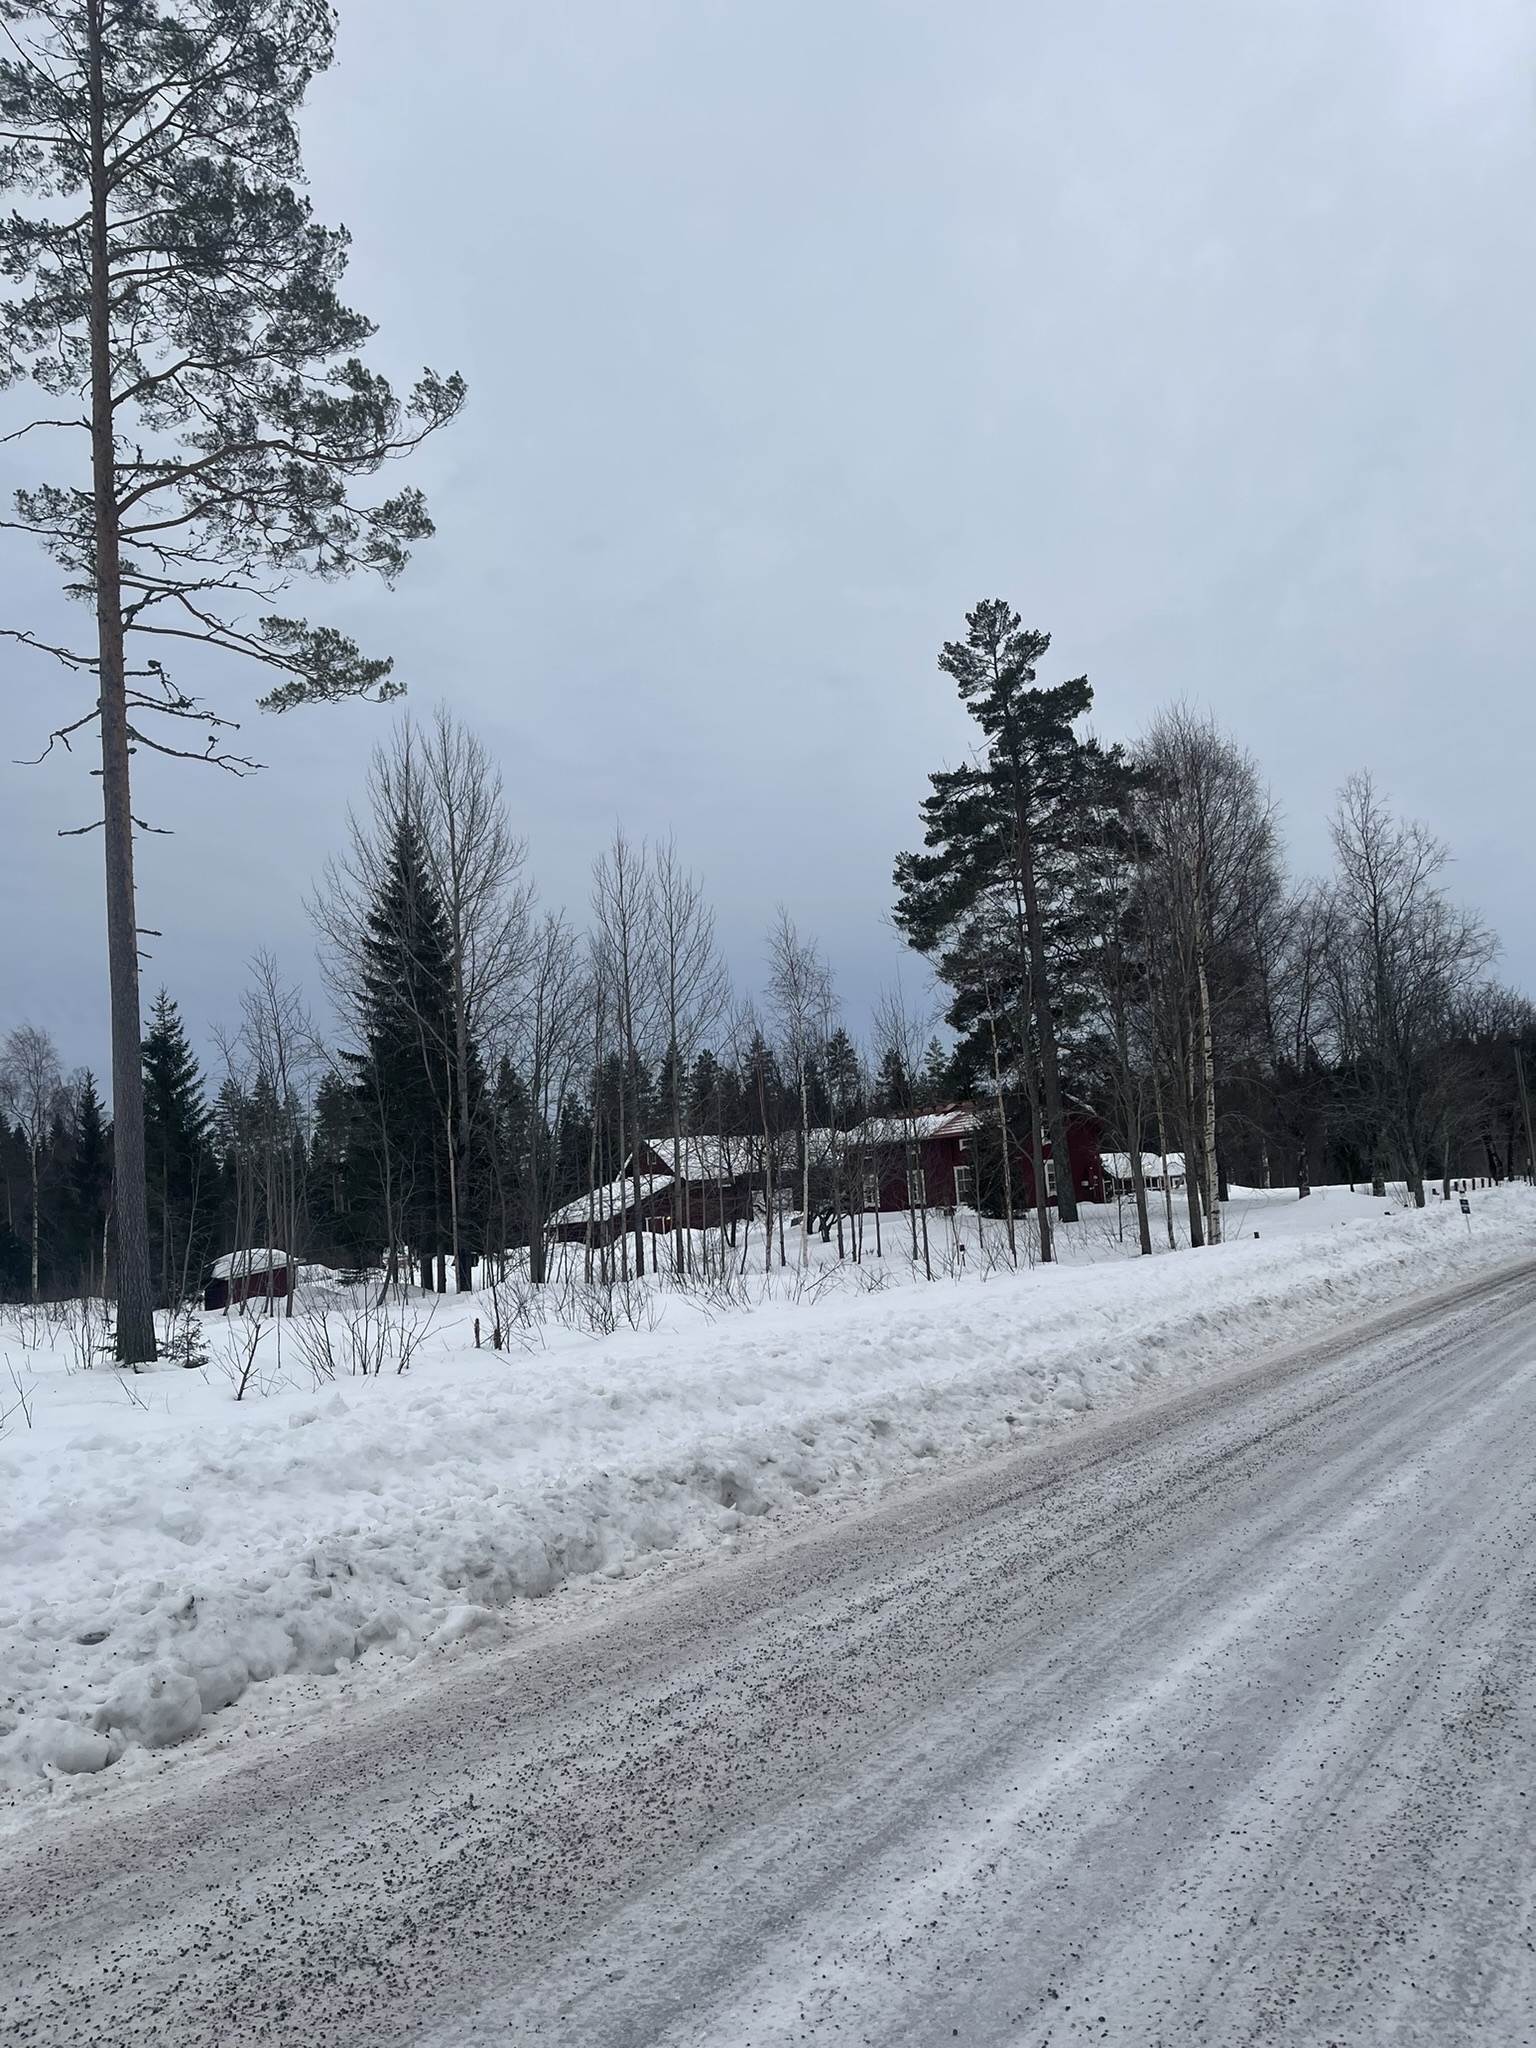  (Шведският север беше много идиличен. До момента, в който не напуснеш пътя и не се наложи да навлезеш в дълбоката гора).